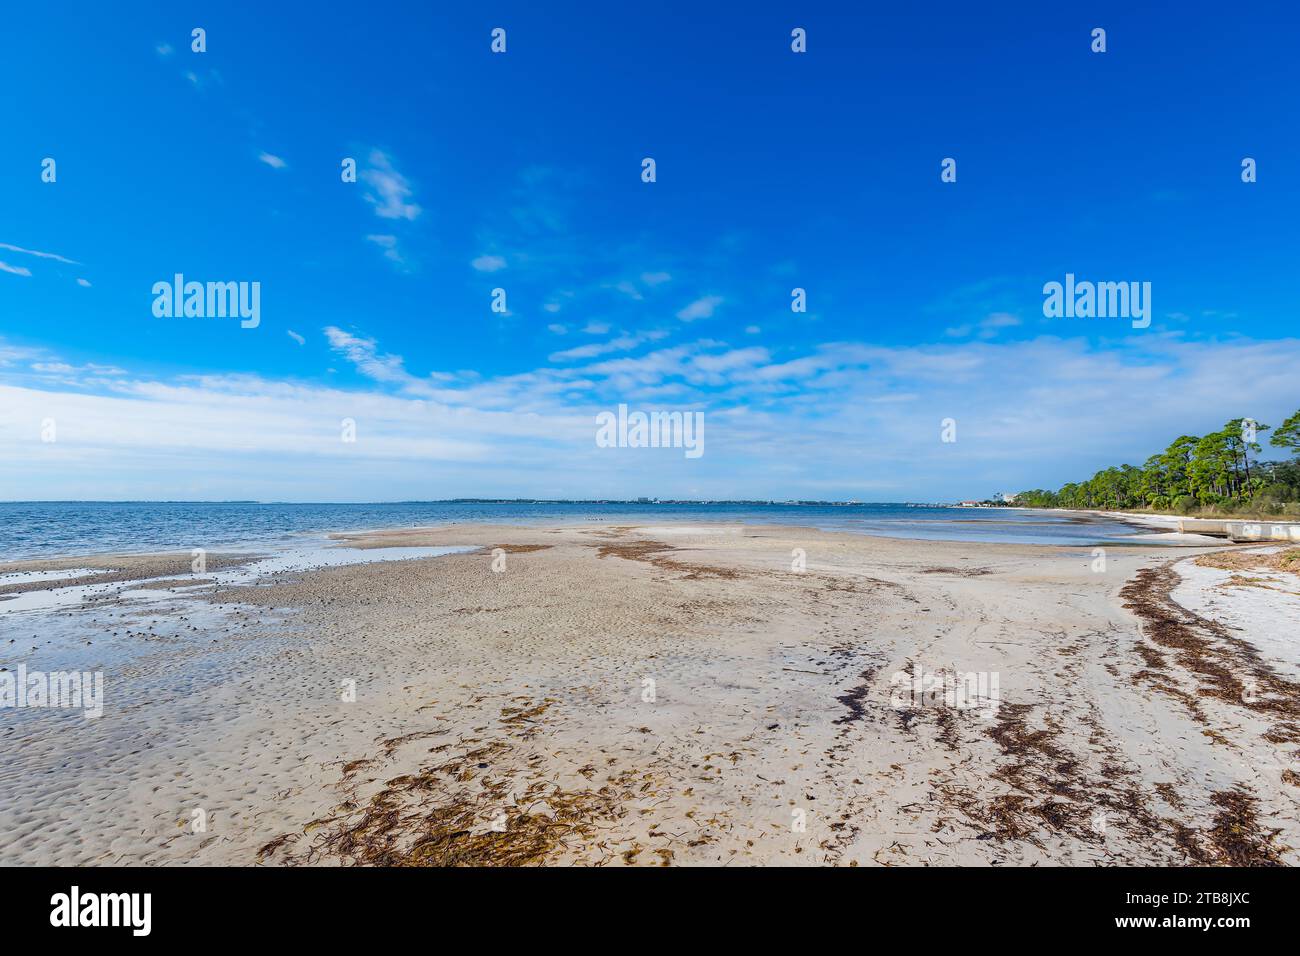 Bellezza tranquilla lungo St Andrews Bay a Panama City, Florida, dove le coste baciate dal sole incontrano il dolce abbraccio delle acque smeraldo, creando un pict Foto Stock